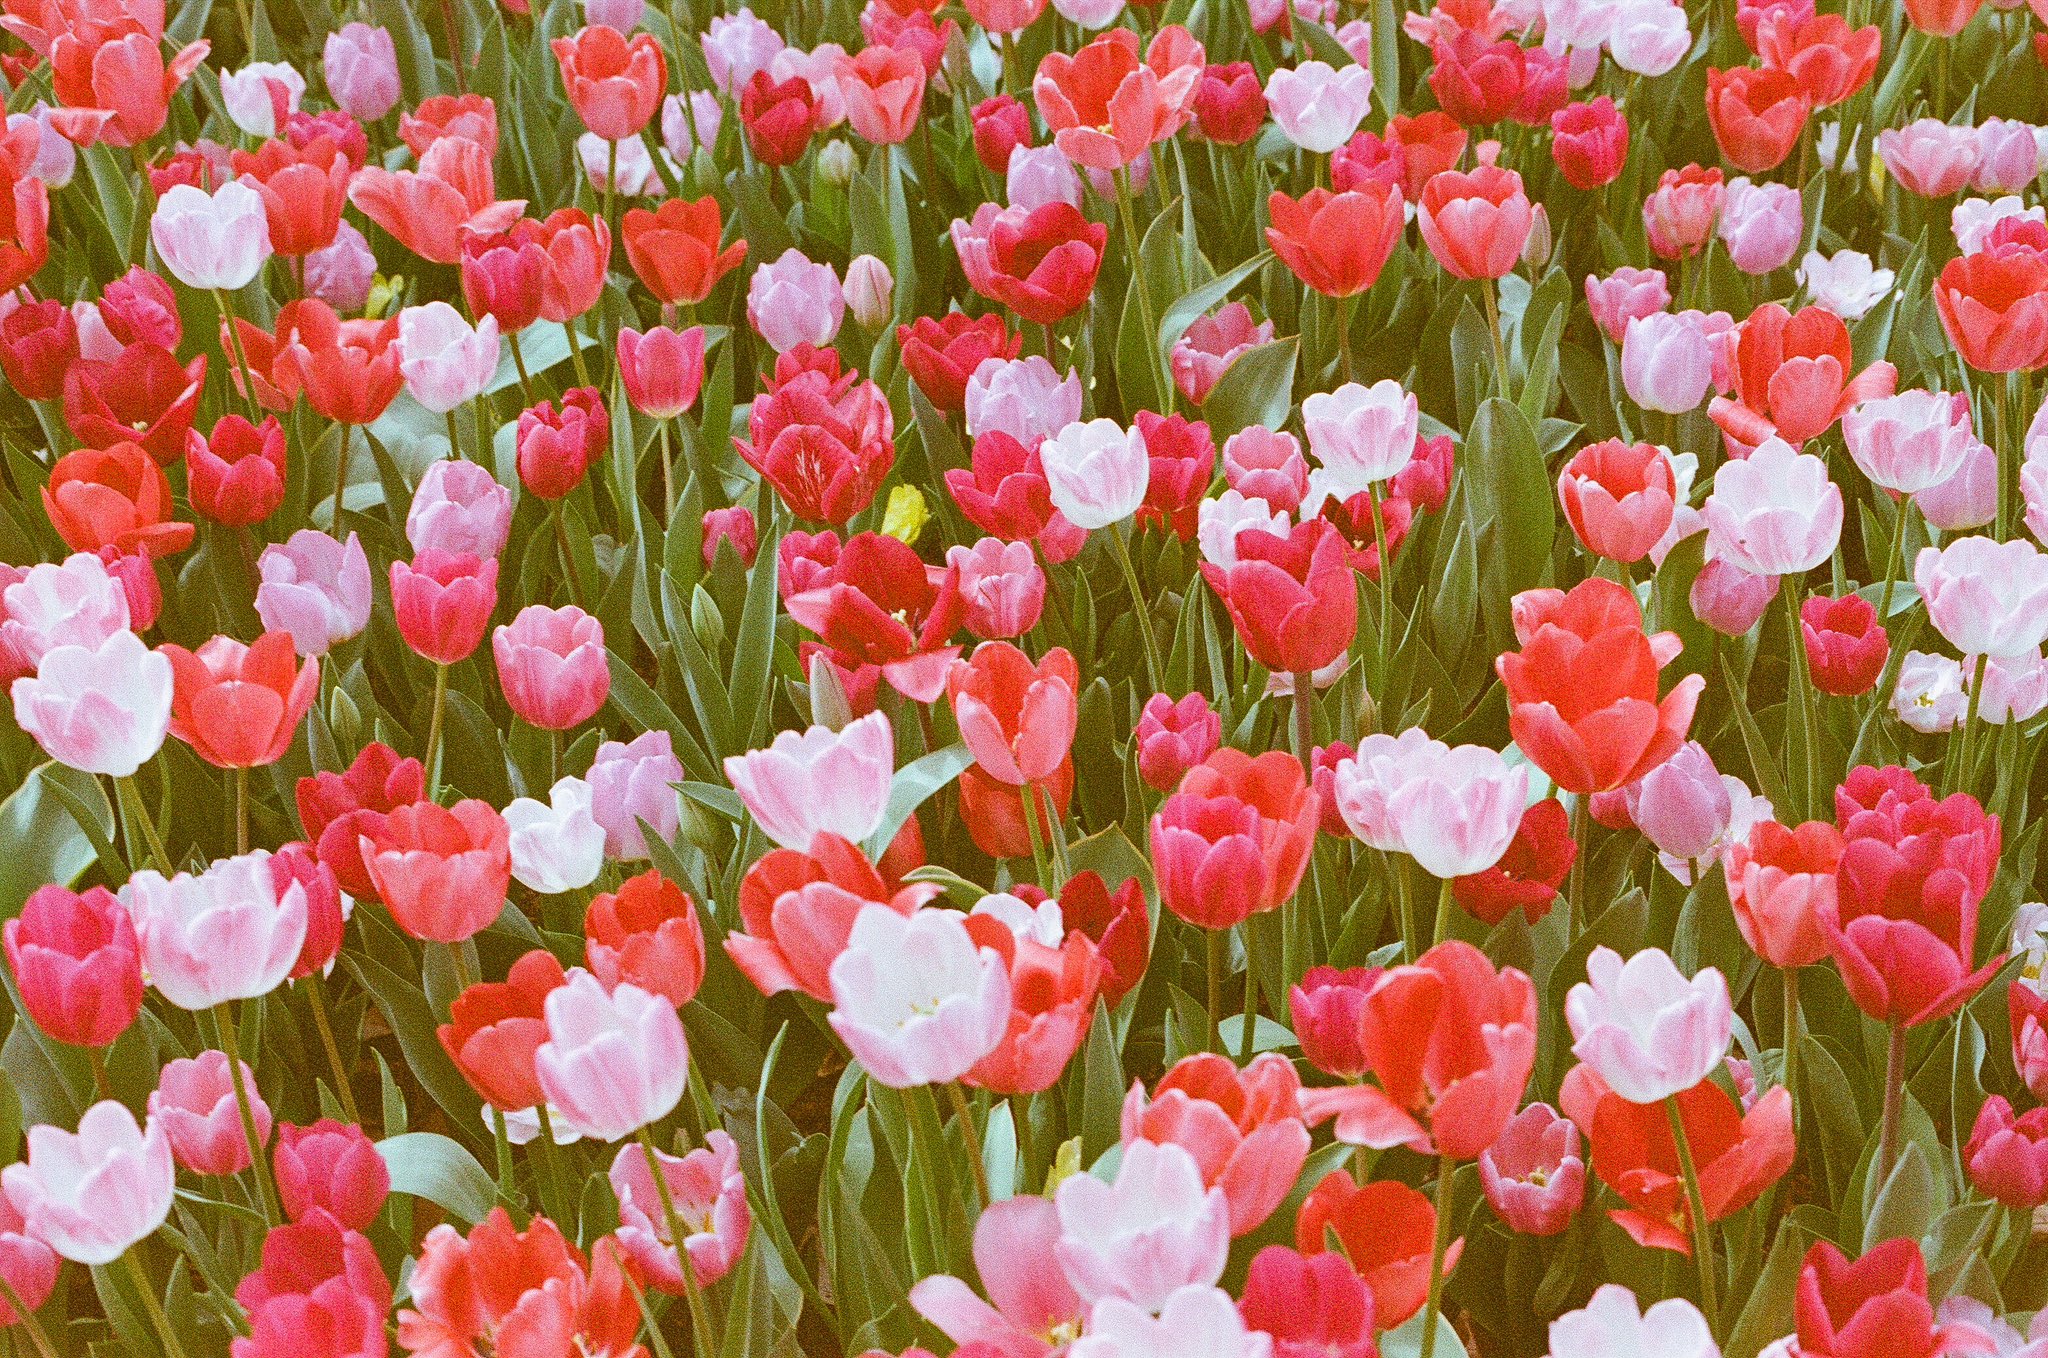 tulips on expired film